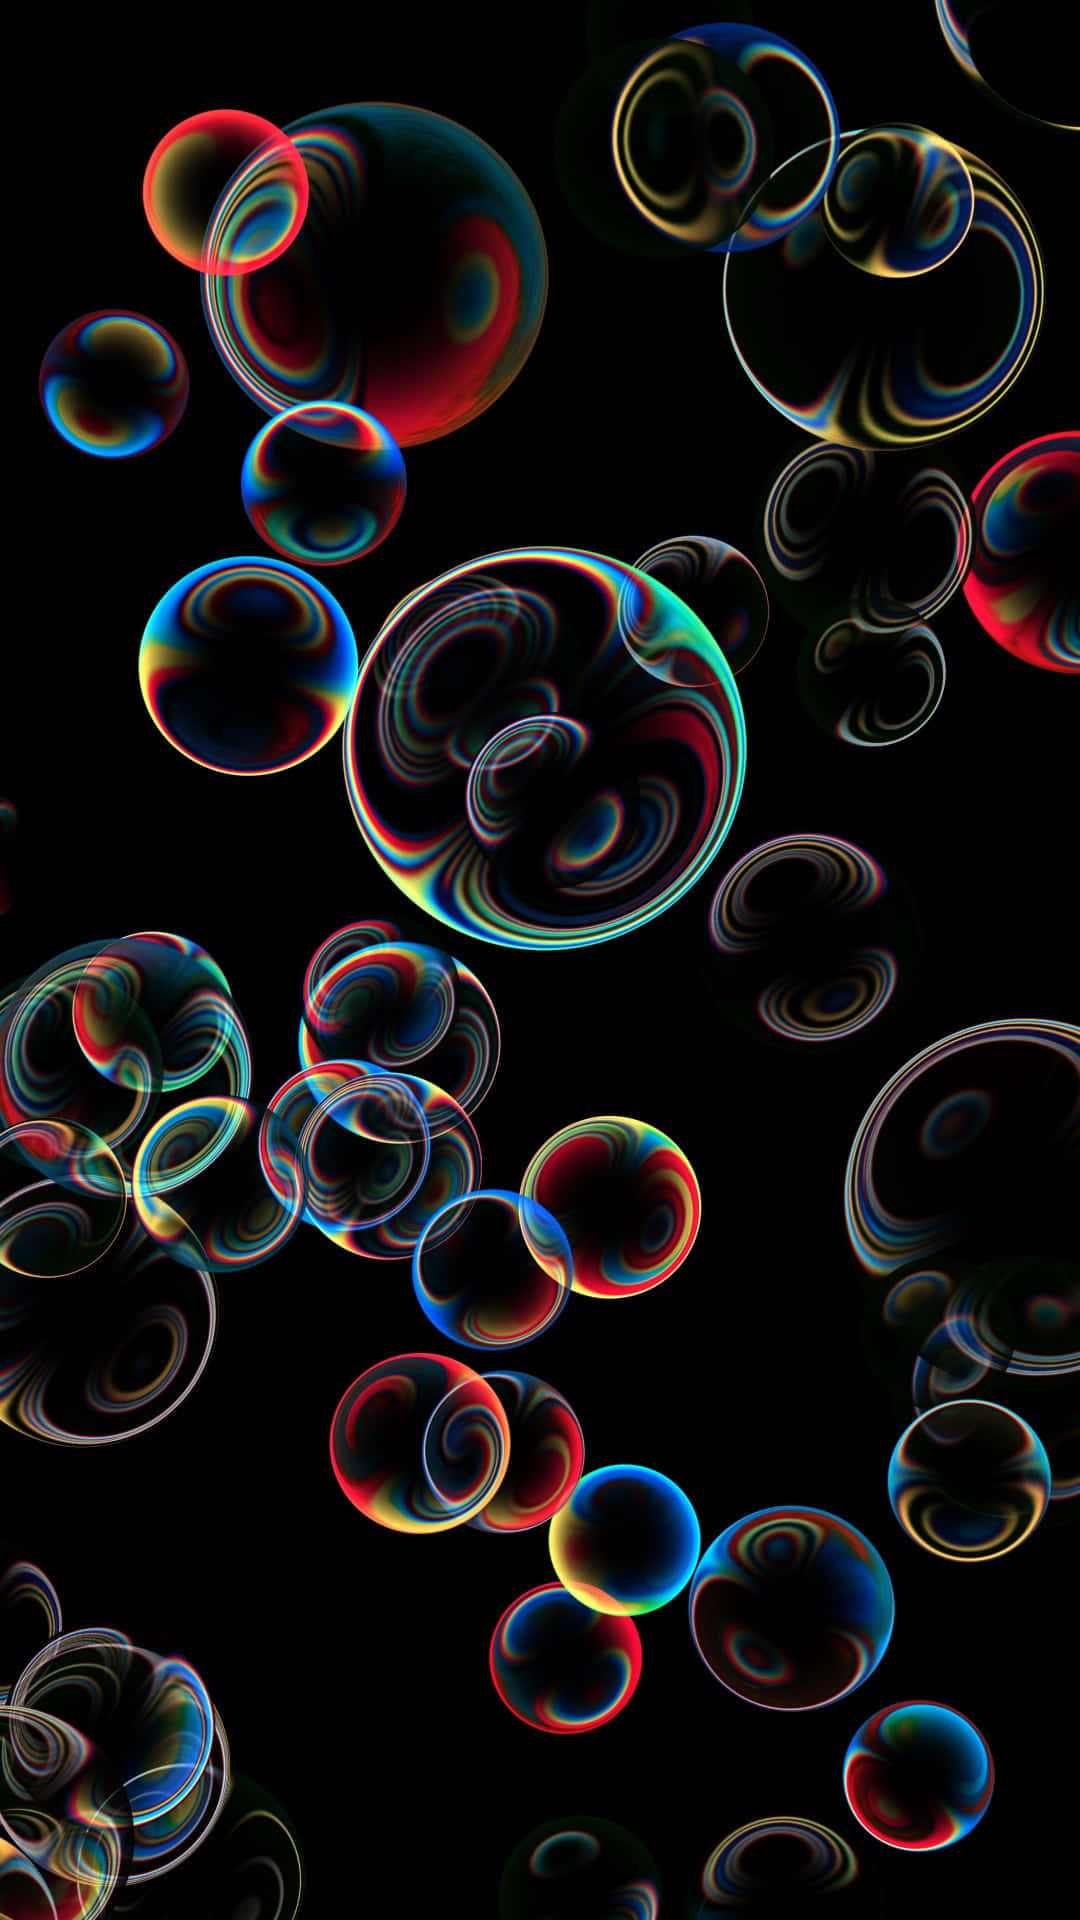 Flotandoentre Las Burbujas